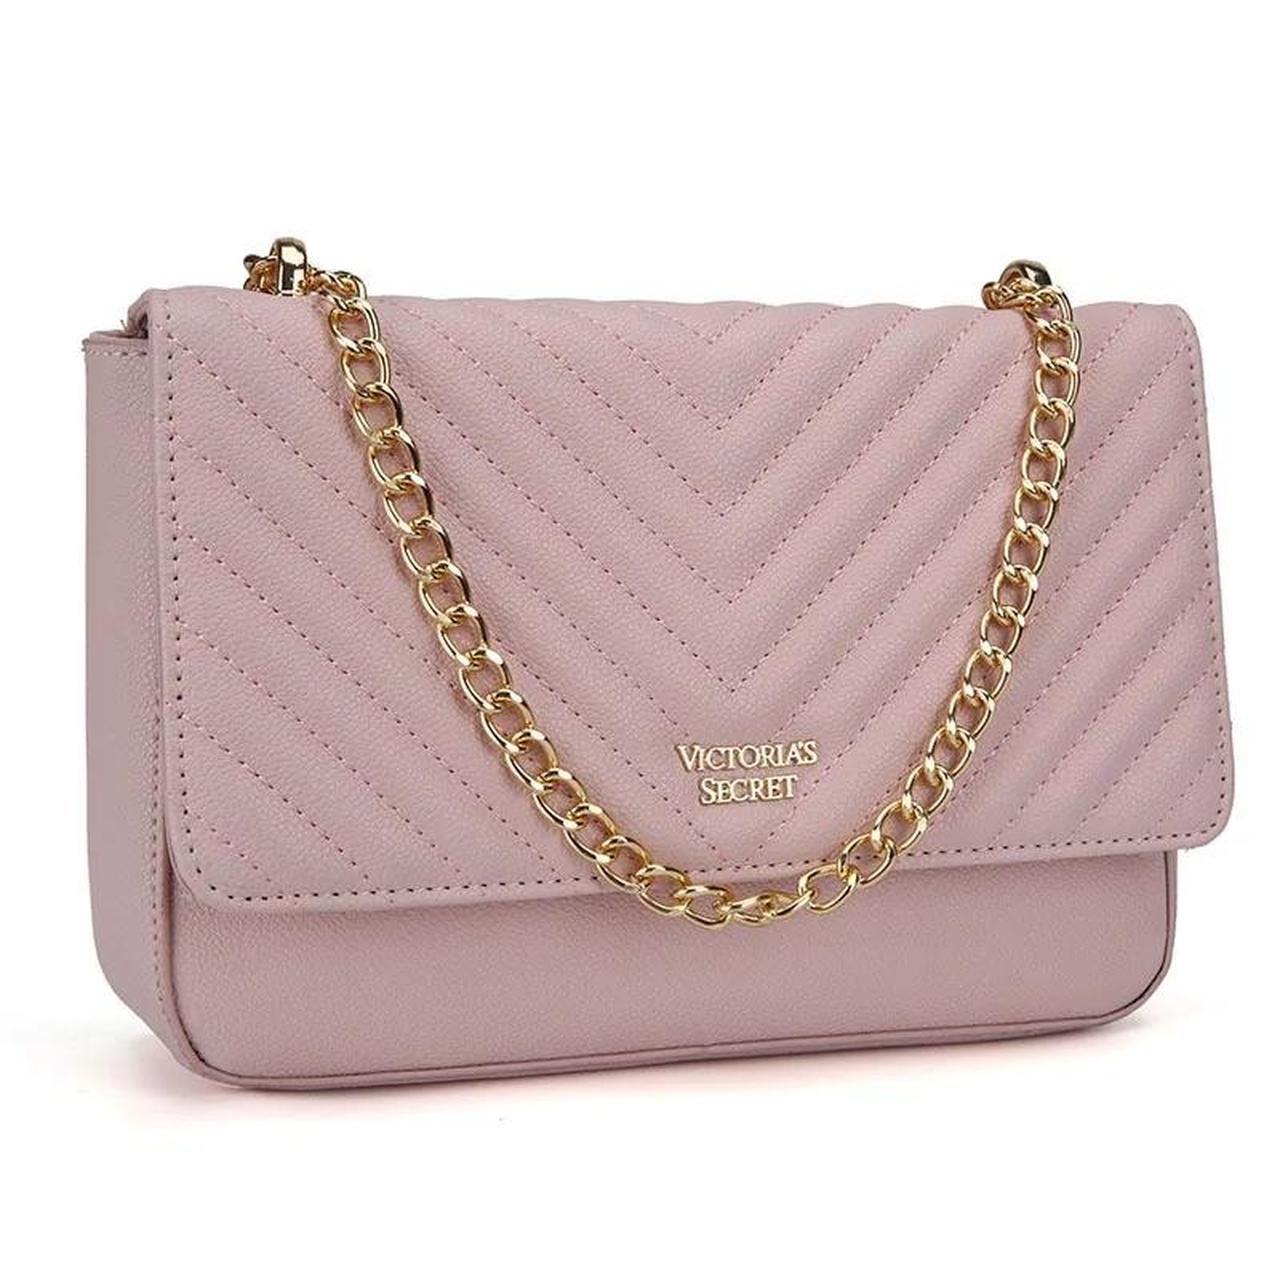 Victoria's Secret Women's Crossbody Bags - Pink